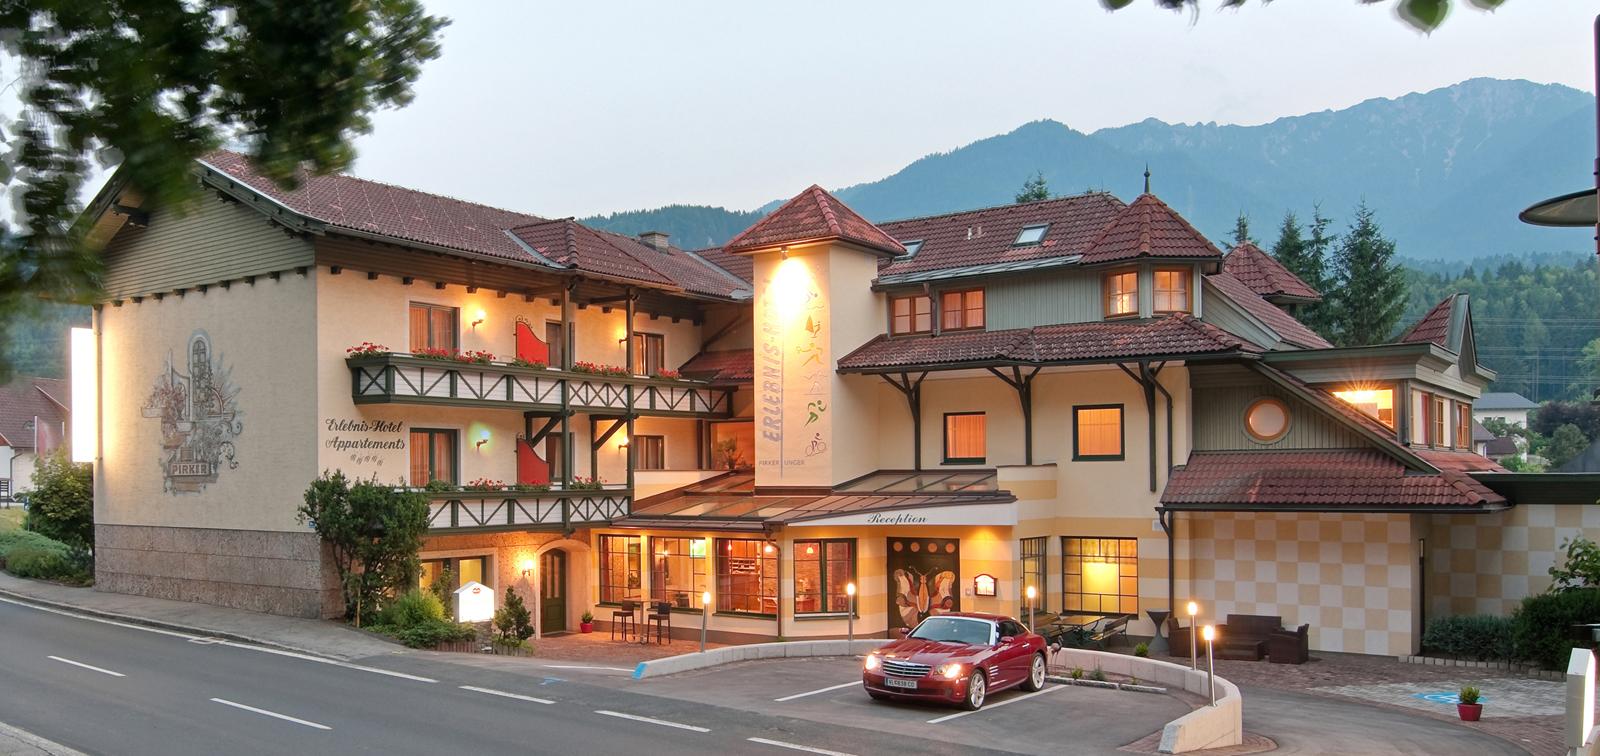 Erlebnis-Hotel Appartements Pirker D/a - Wört Ferienwohnung in Österreich